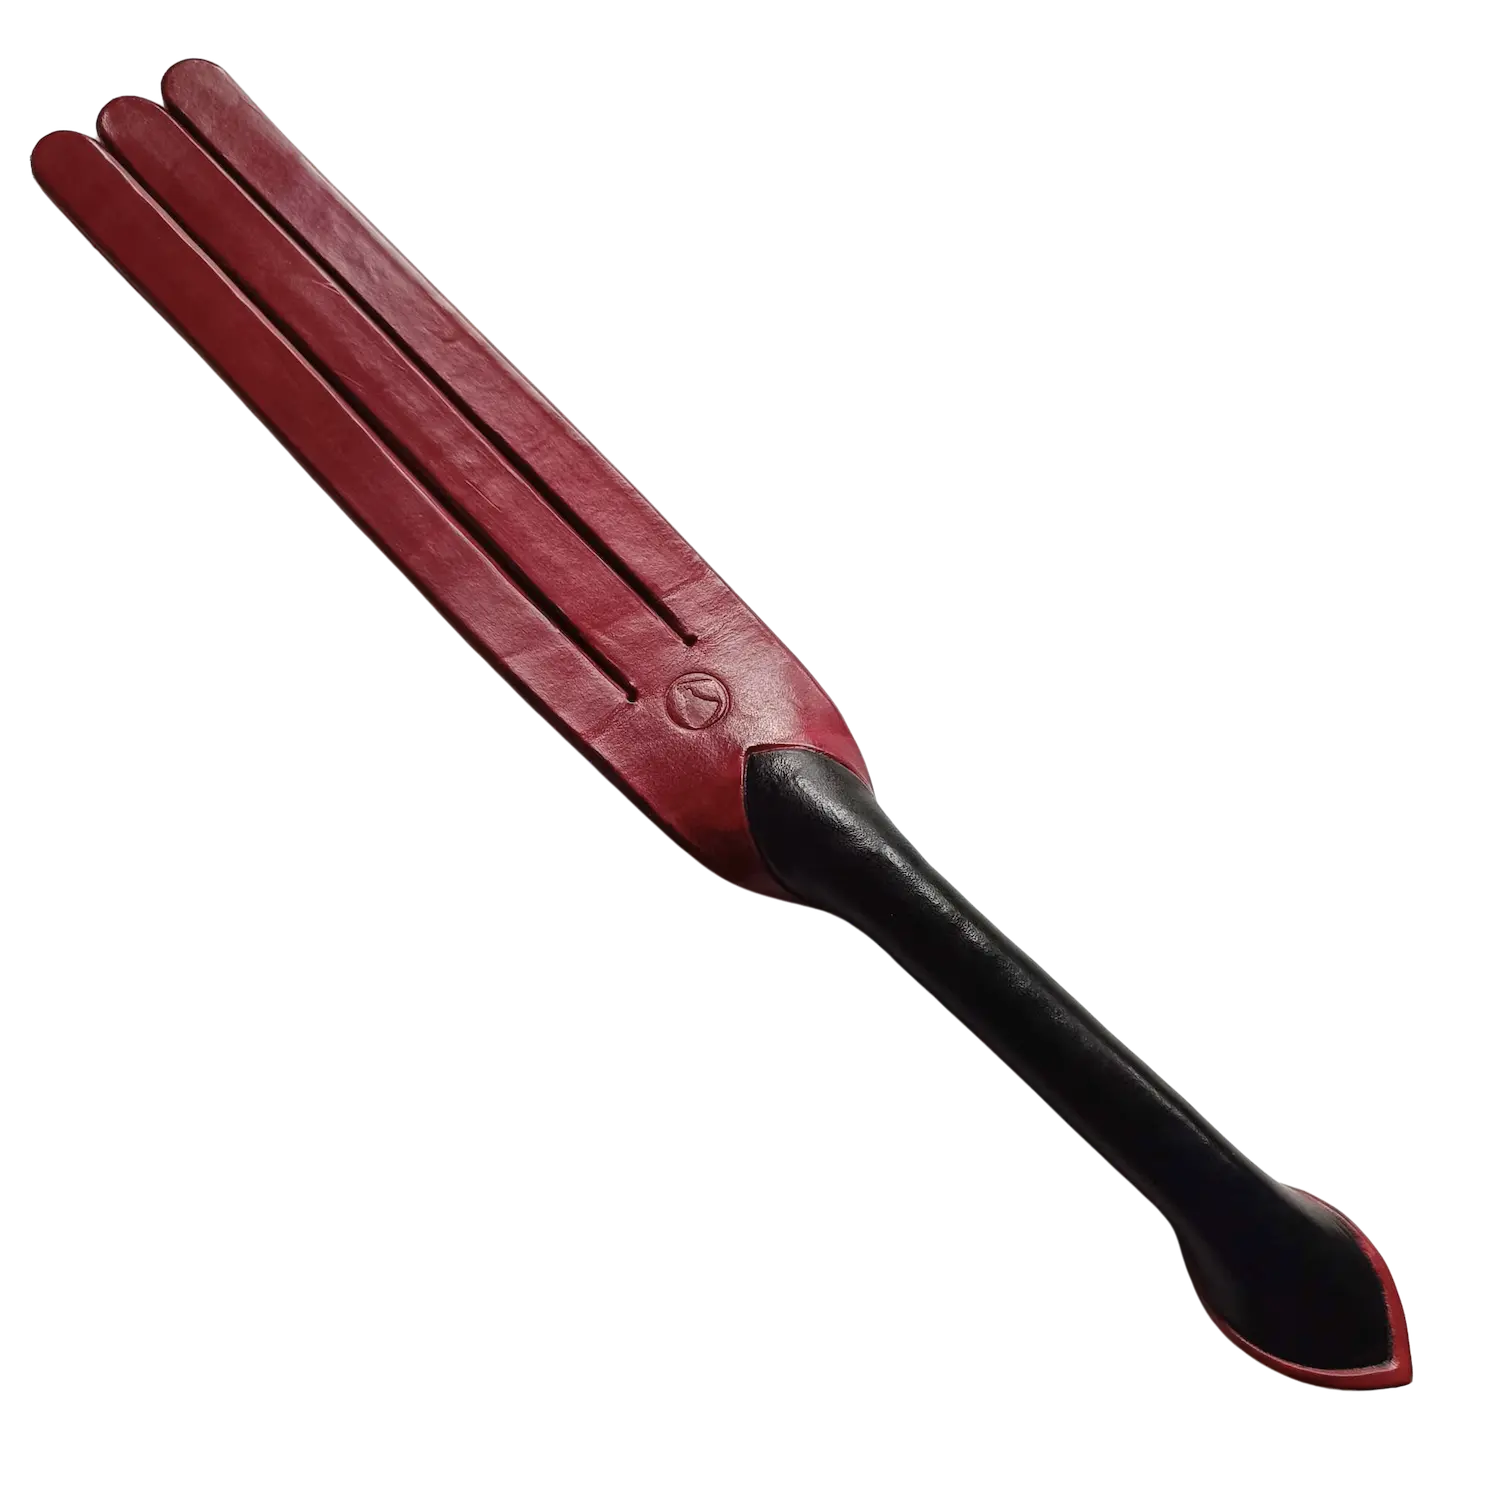 Spankingová vidlička v tmavě červené s černou rukojetí. Cena 3000 Kč